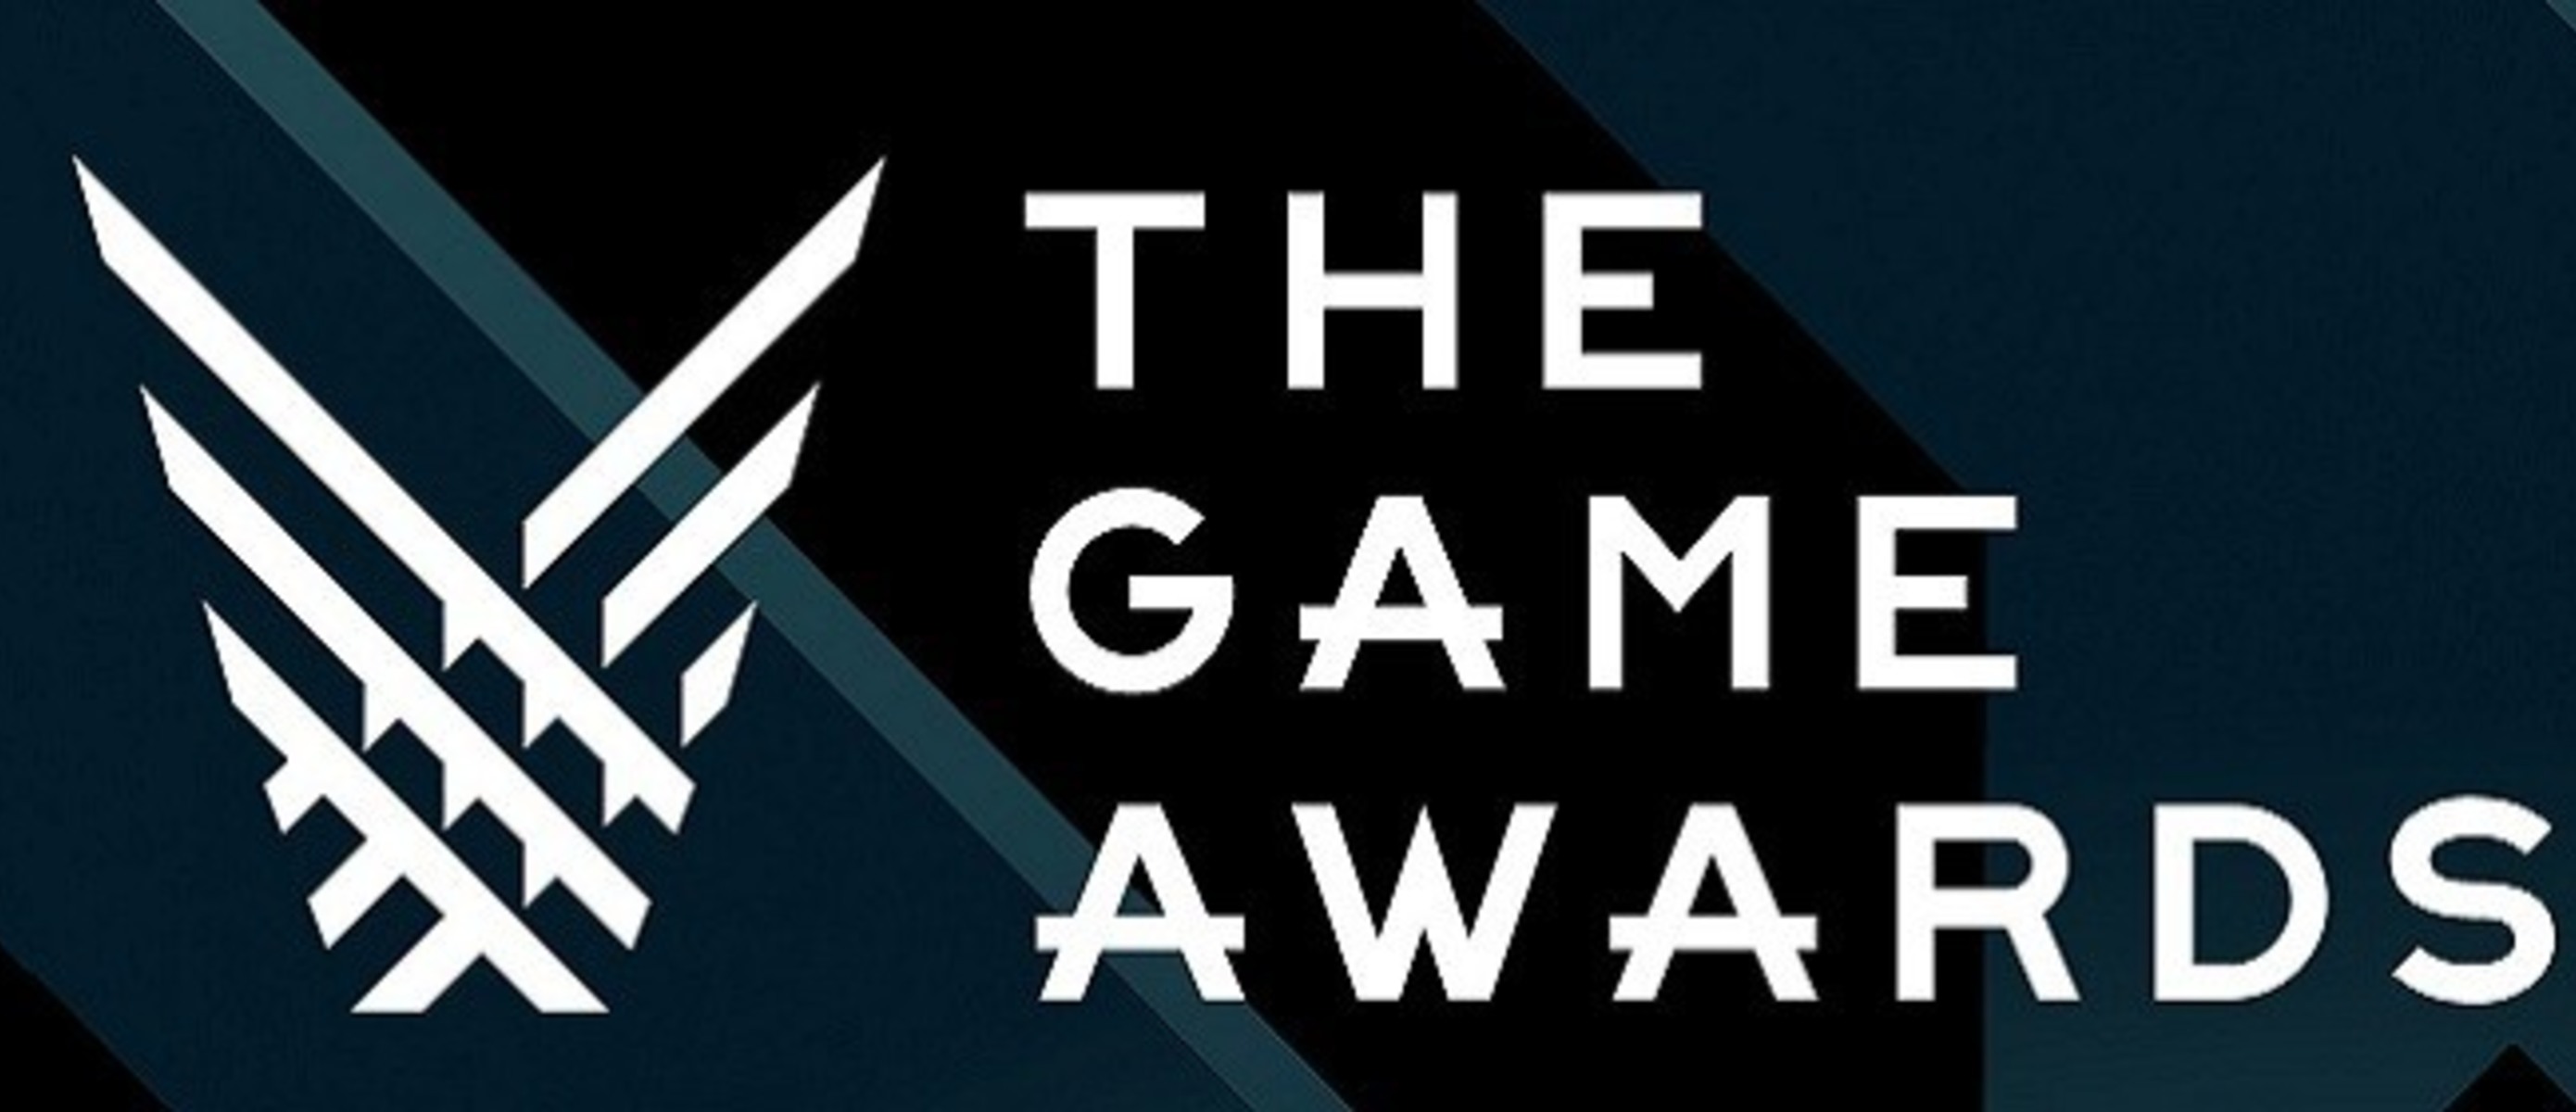 Game awards. The game Awards 2020. The game Awards 2018. Логотип the game Awards. The game Awards 2019.